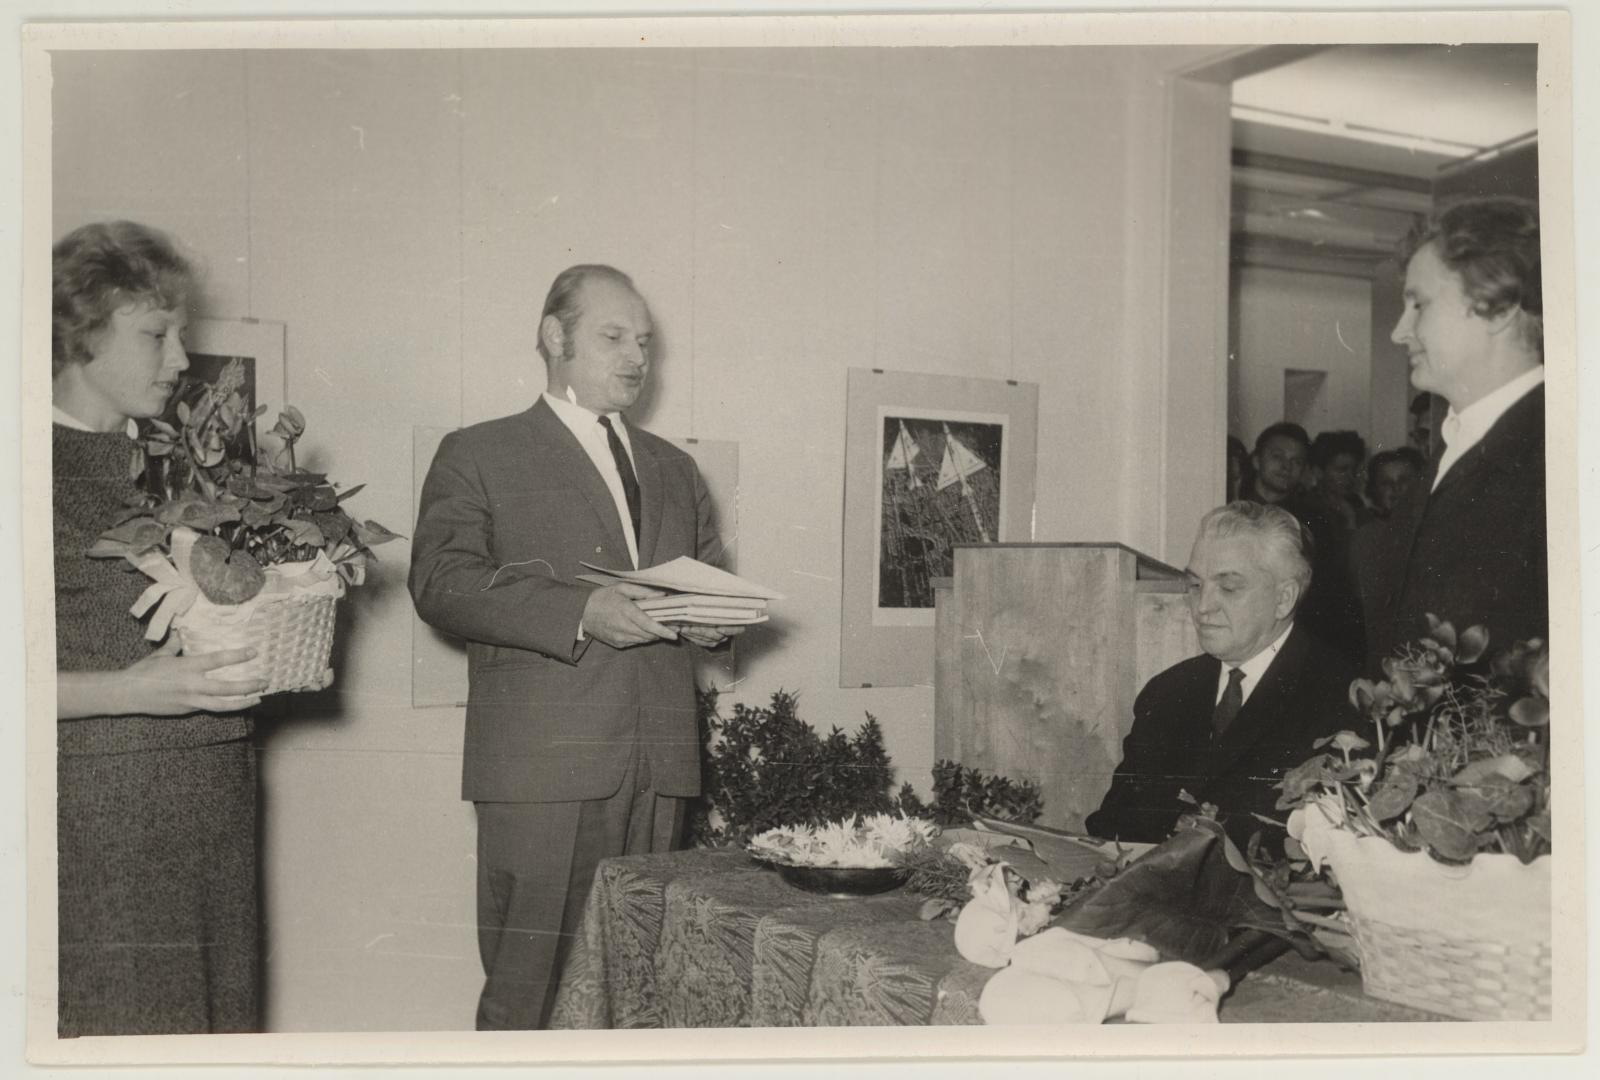 TKM-i III teaduslik konverents, millega tähistati muuseumi 25ndat aastapäeva 17.-18. nov. 1965.